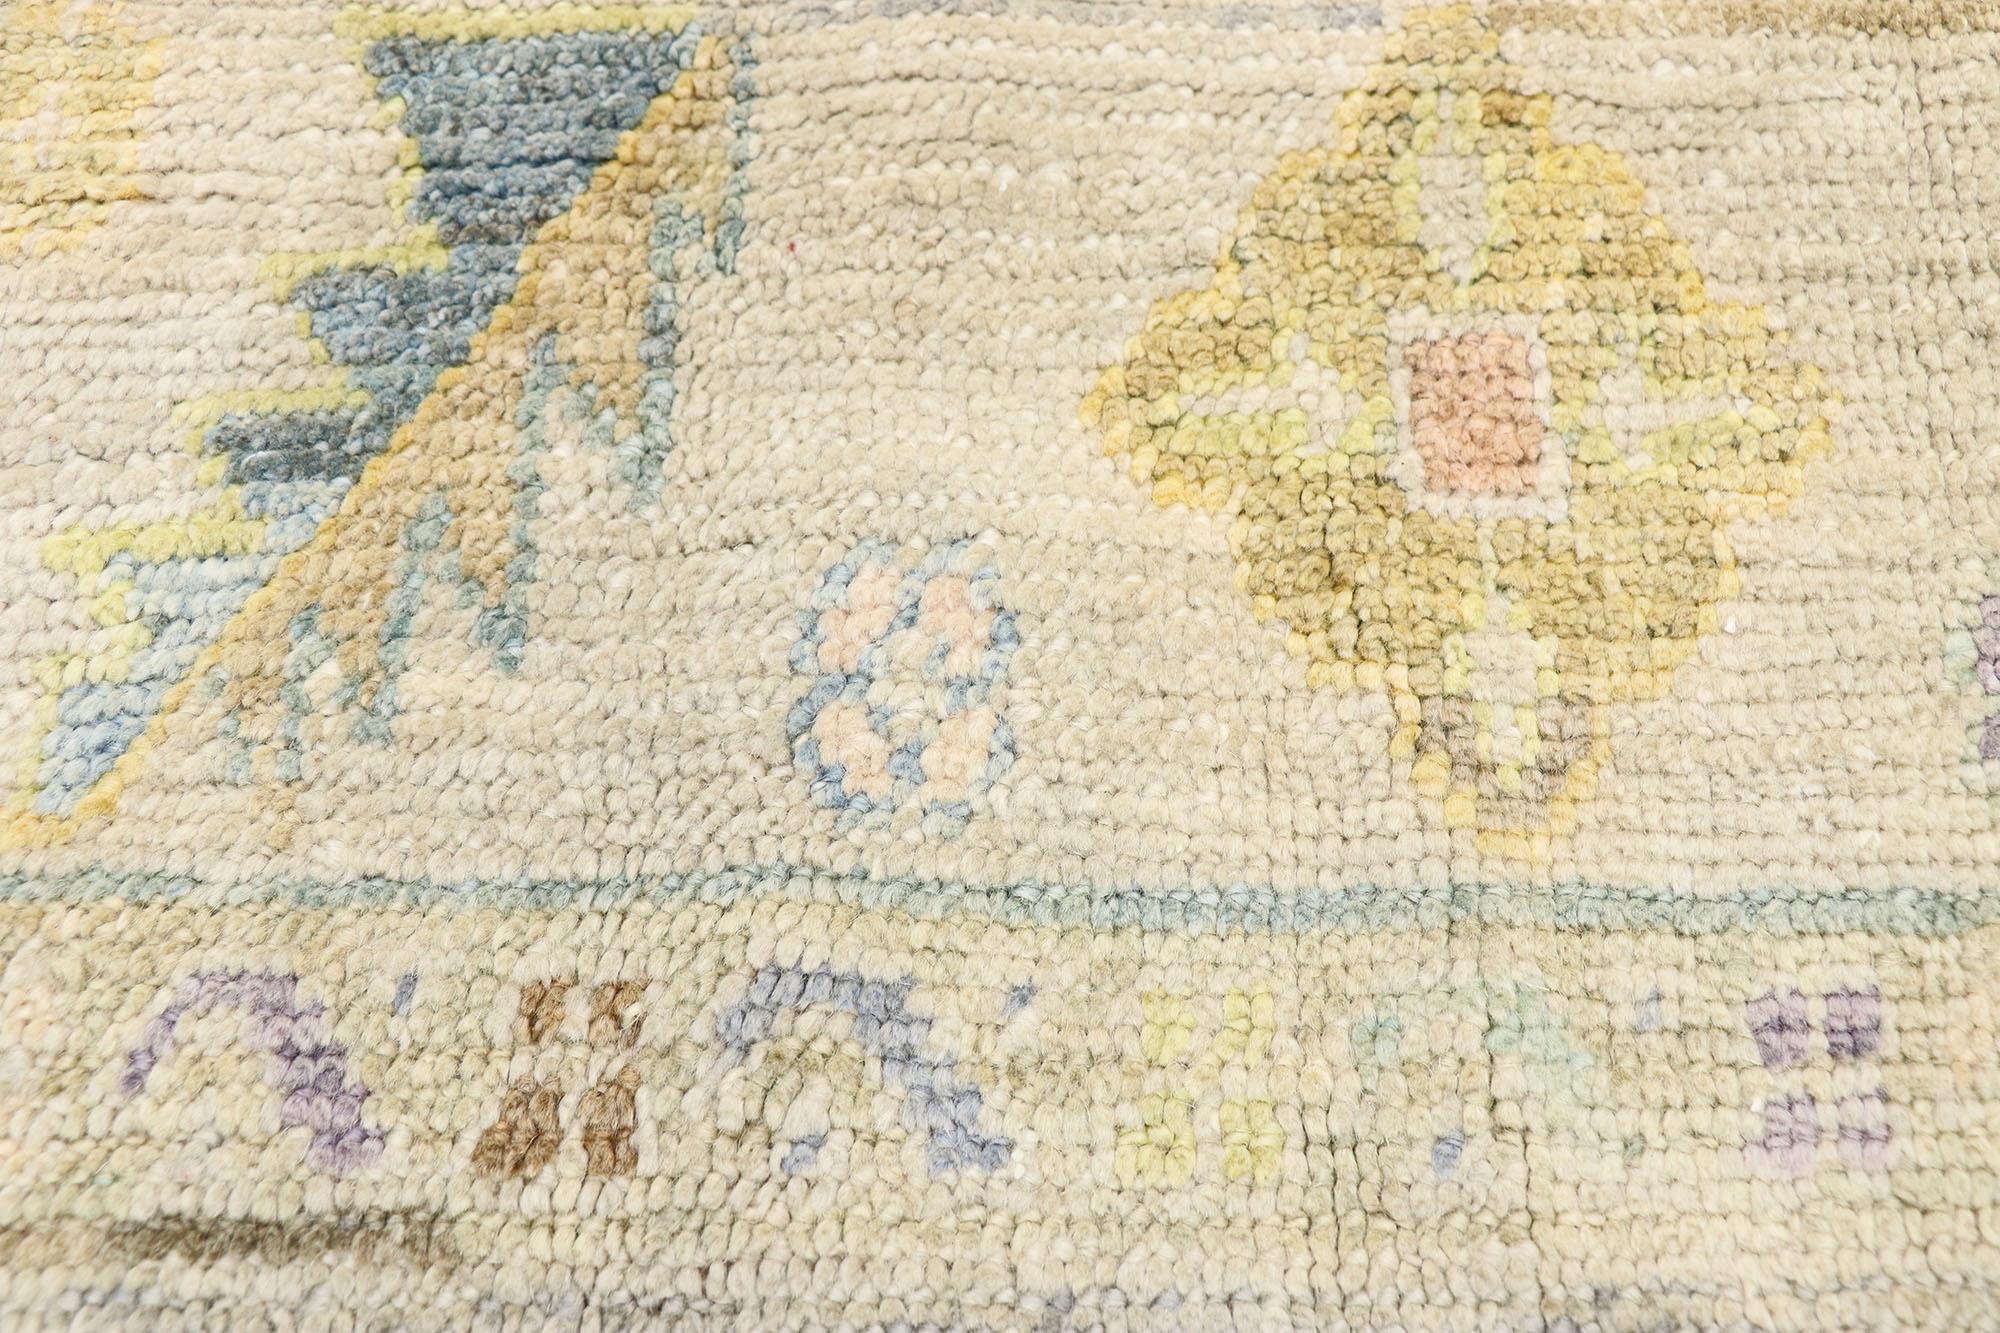 oushak rugs pastel